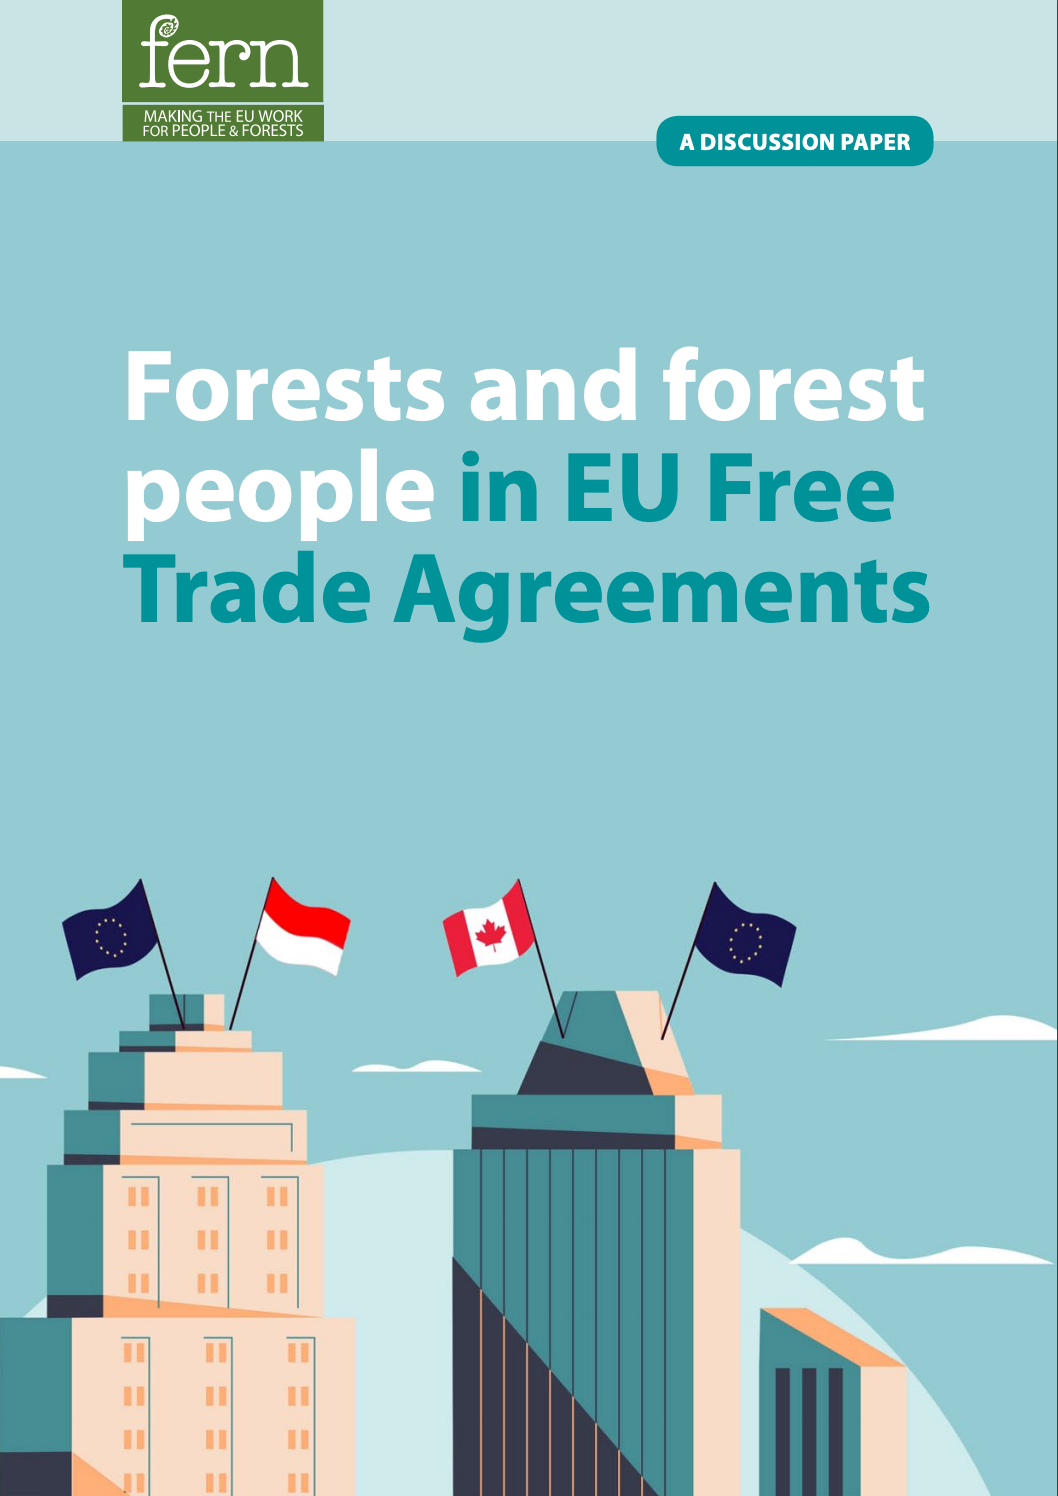 Les forêts et les peuples forestiers dans les accords de libre-échange de l’Union européenne